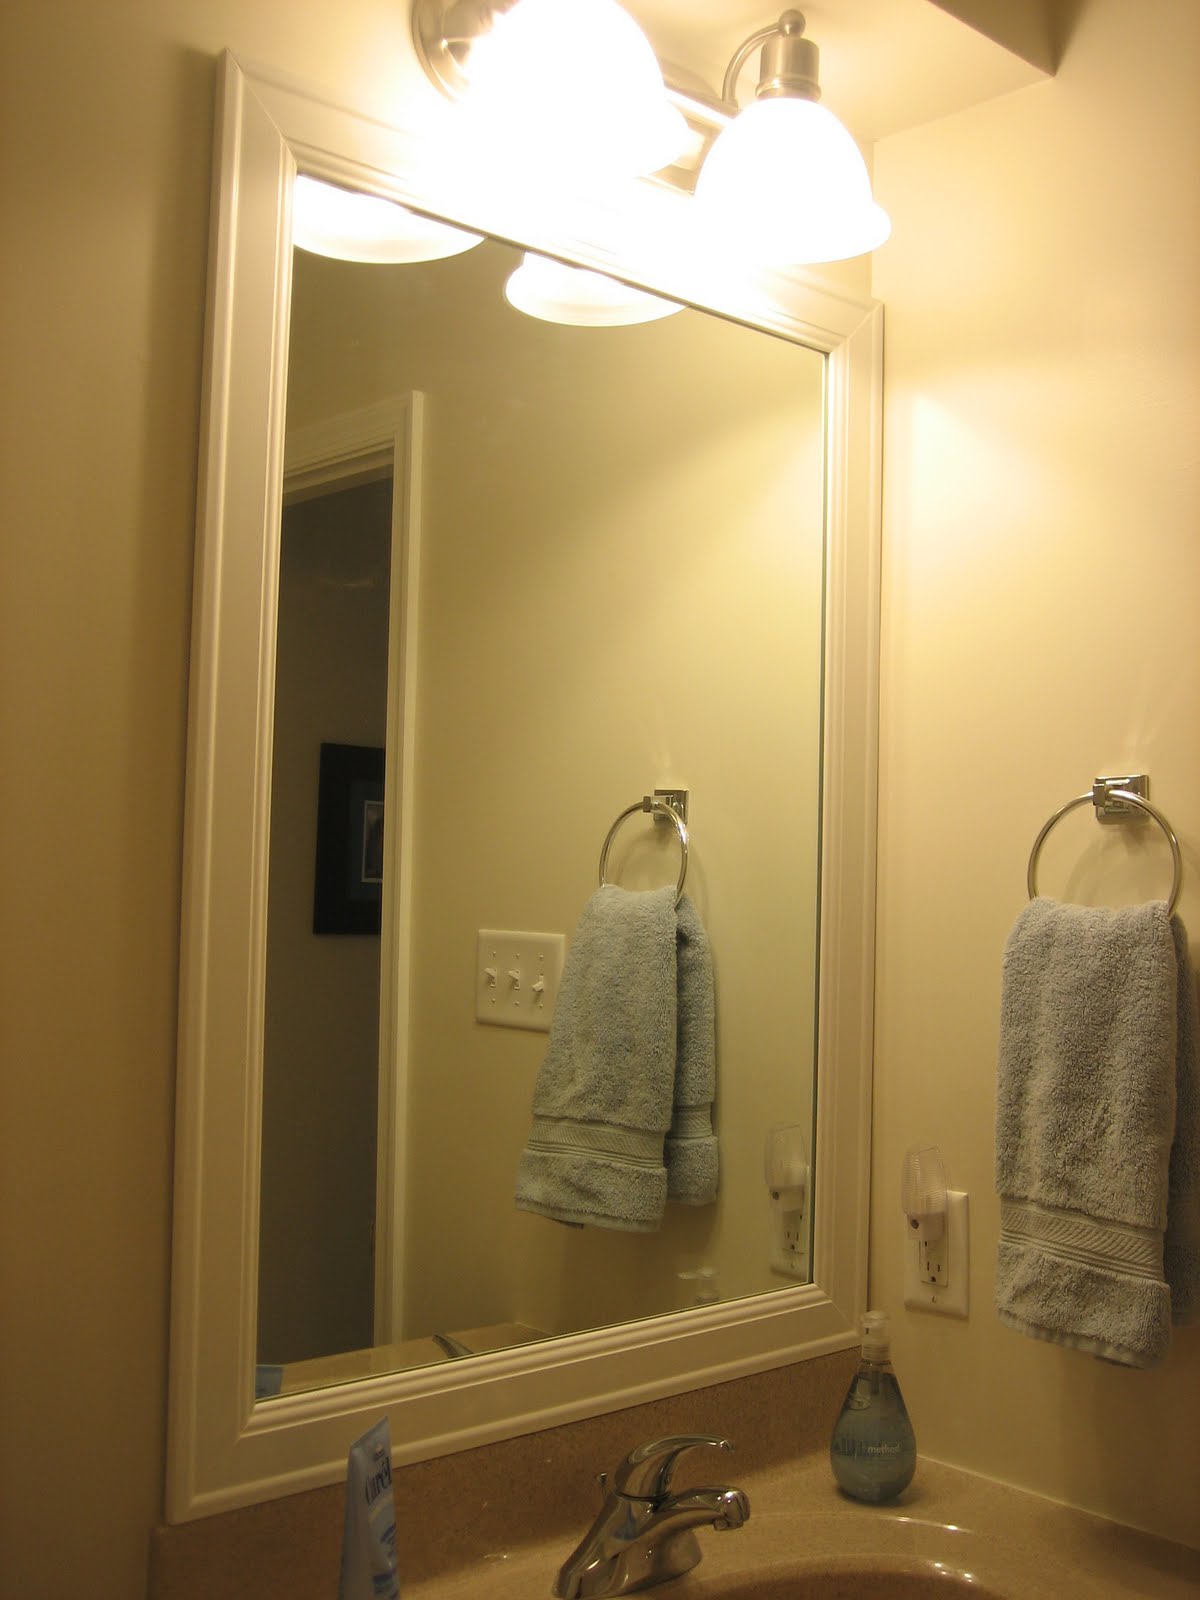 Elizabeth & Co.: Framing Bathroom Mirrors